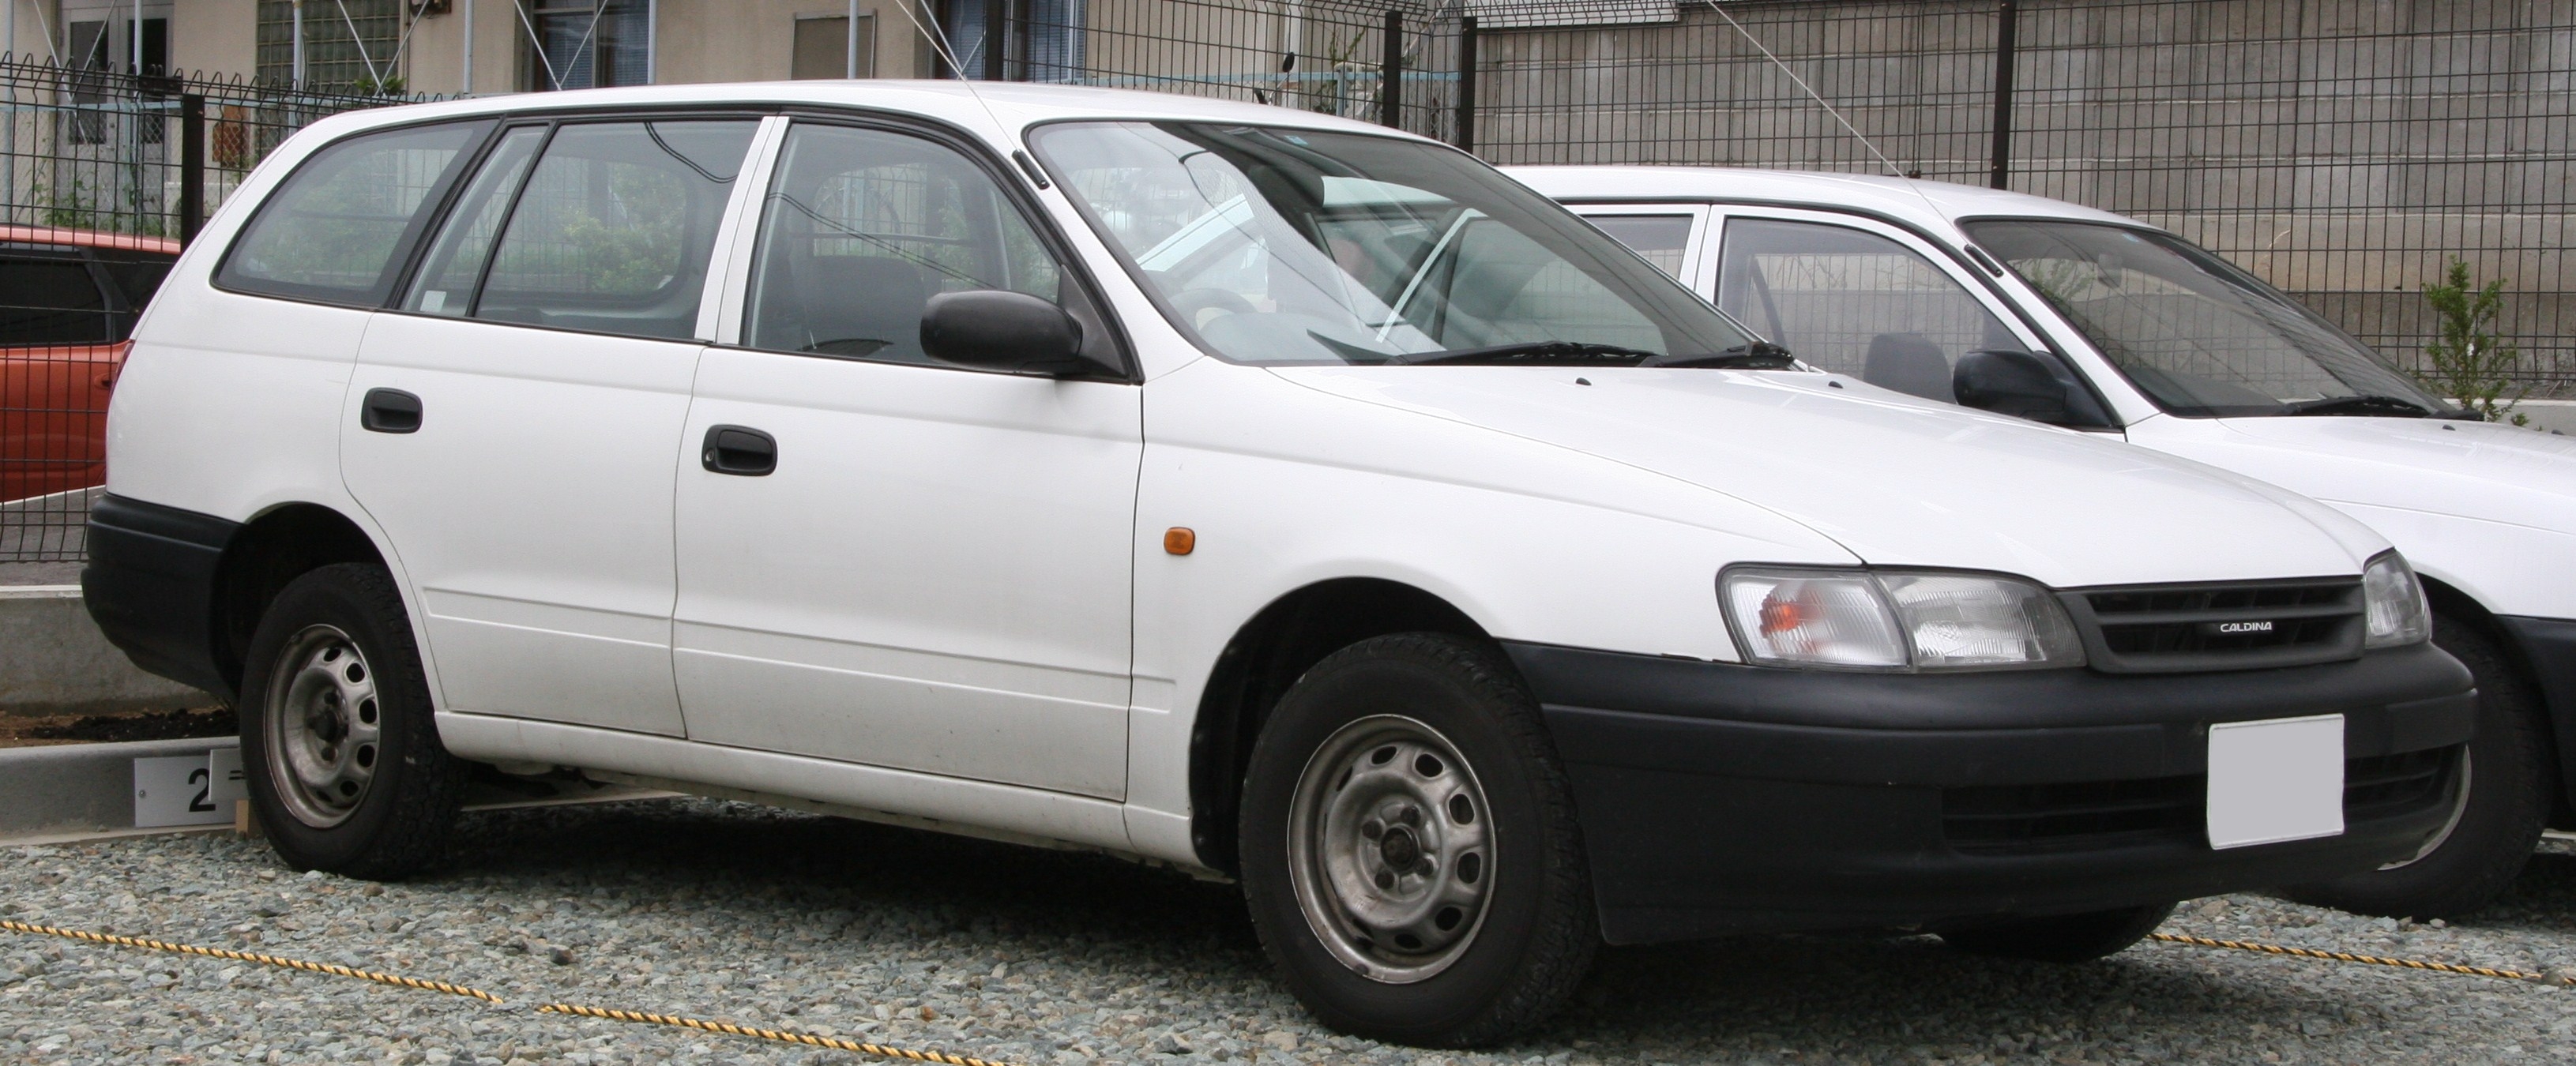 Toyota Caldina Van: 1 фото